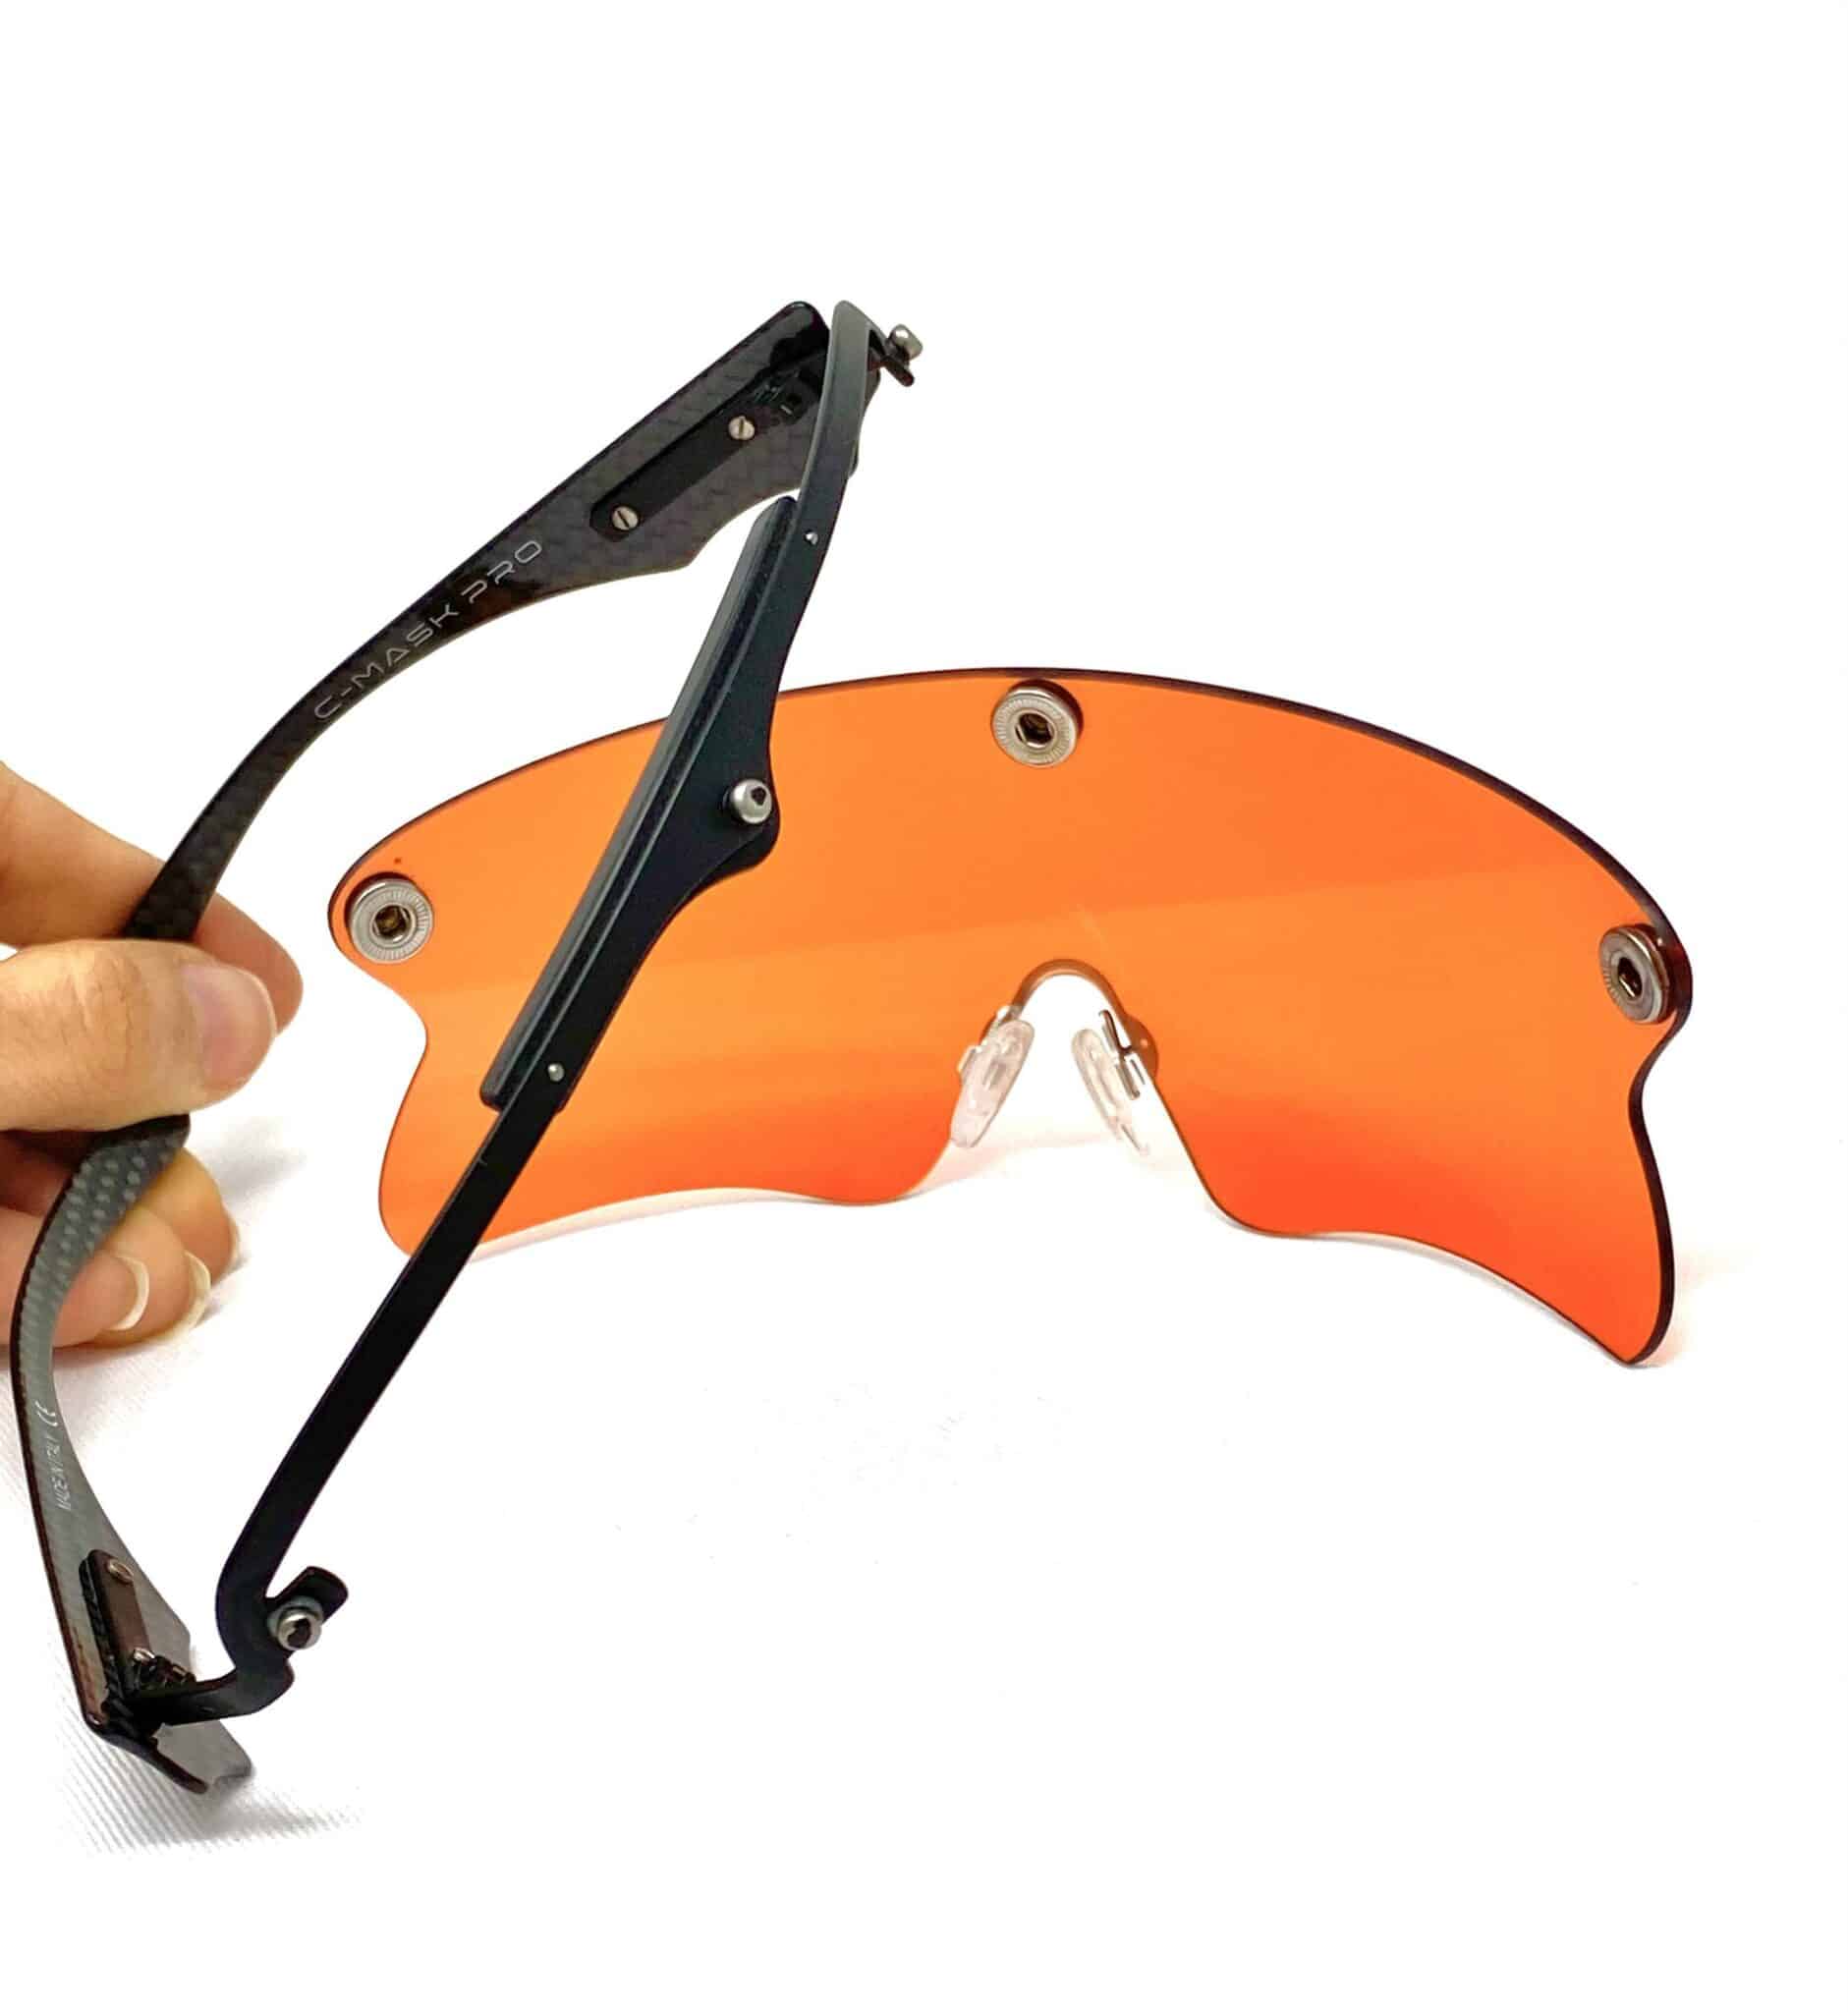 Gli occhiali da tiro Castellani C-Mask Pro con il sistema di cambio rapido della lente.